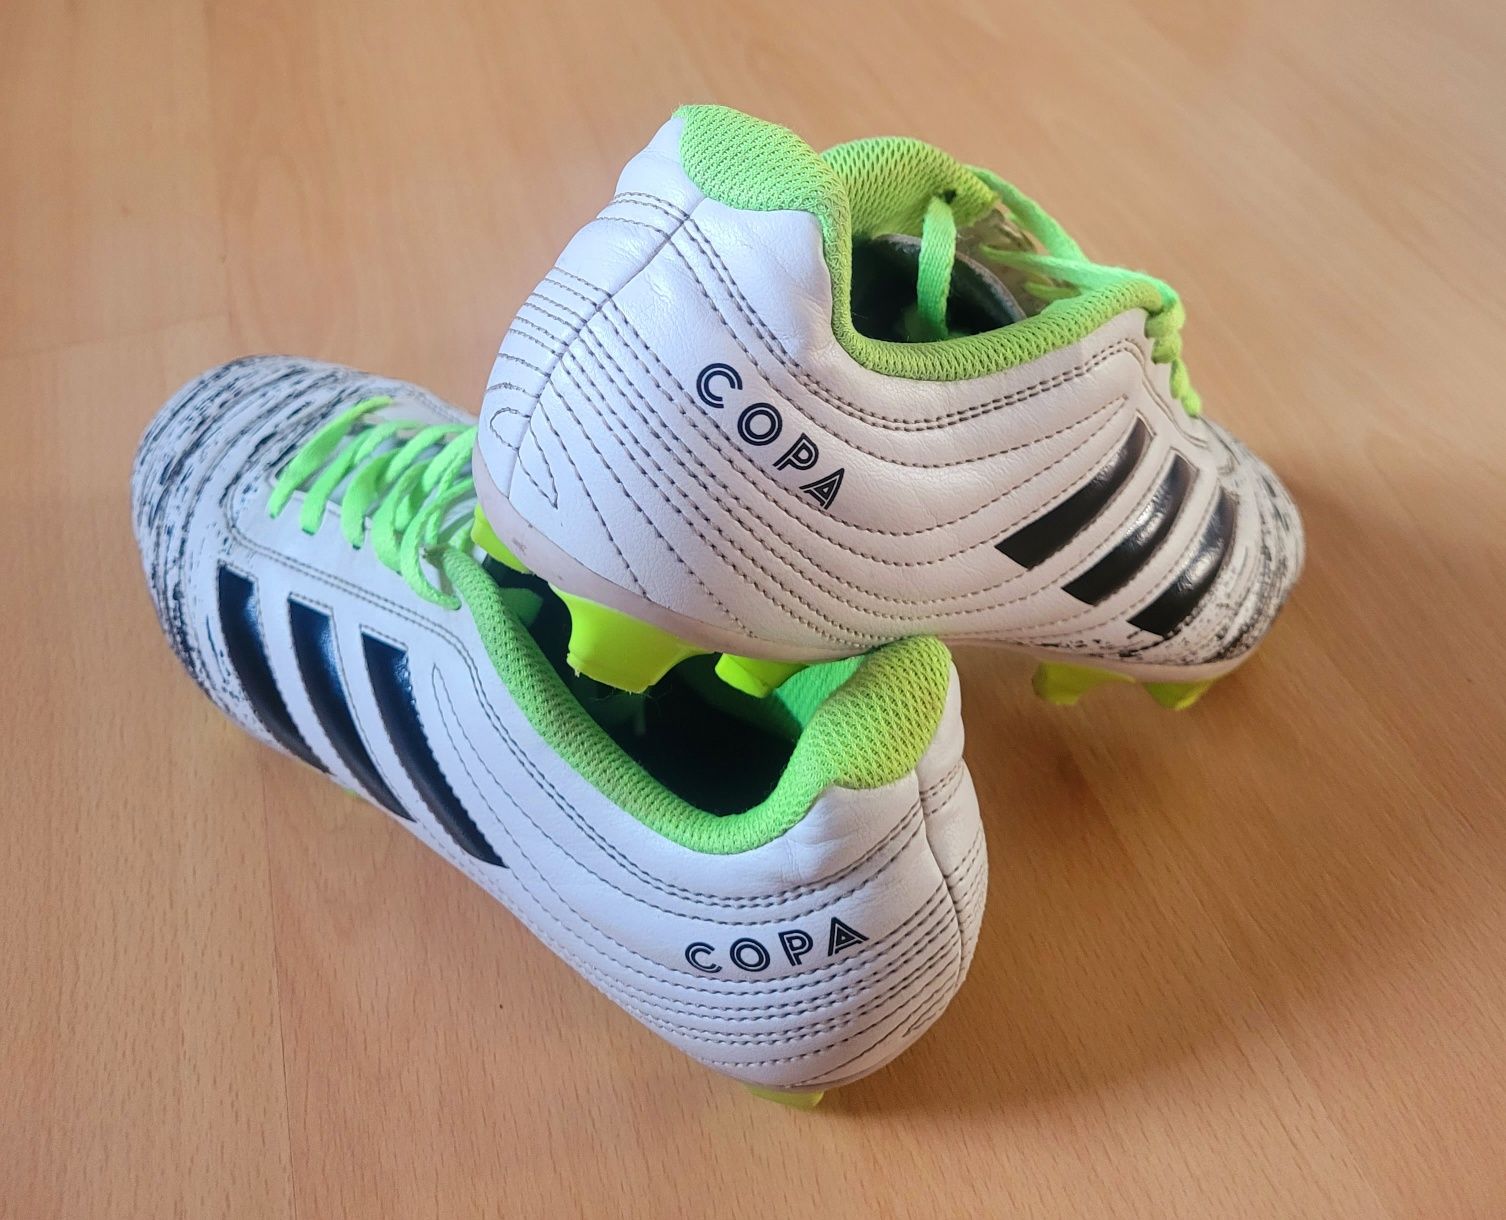 Buty piłkarskie, lanki Adidas Copa r.40